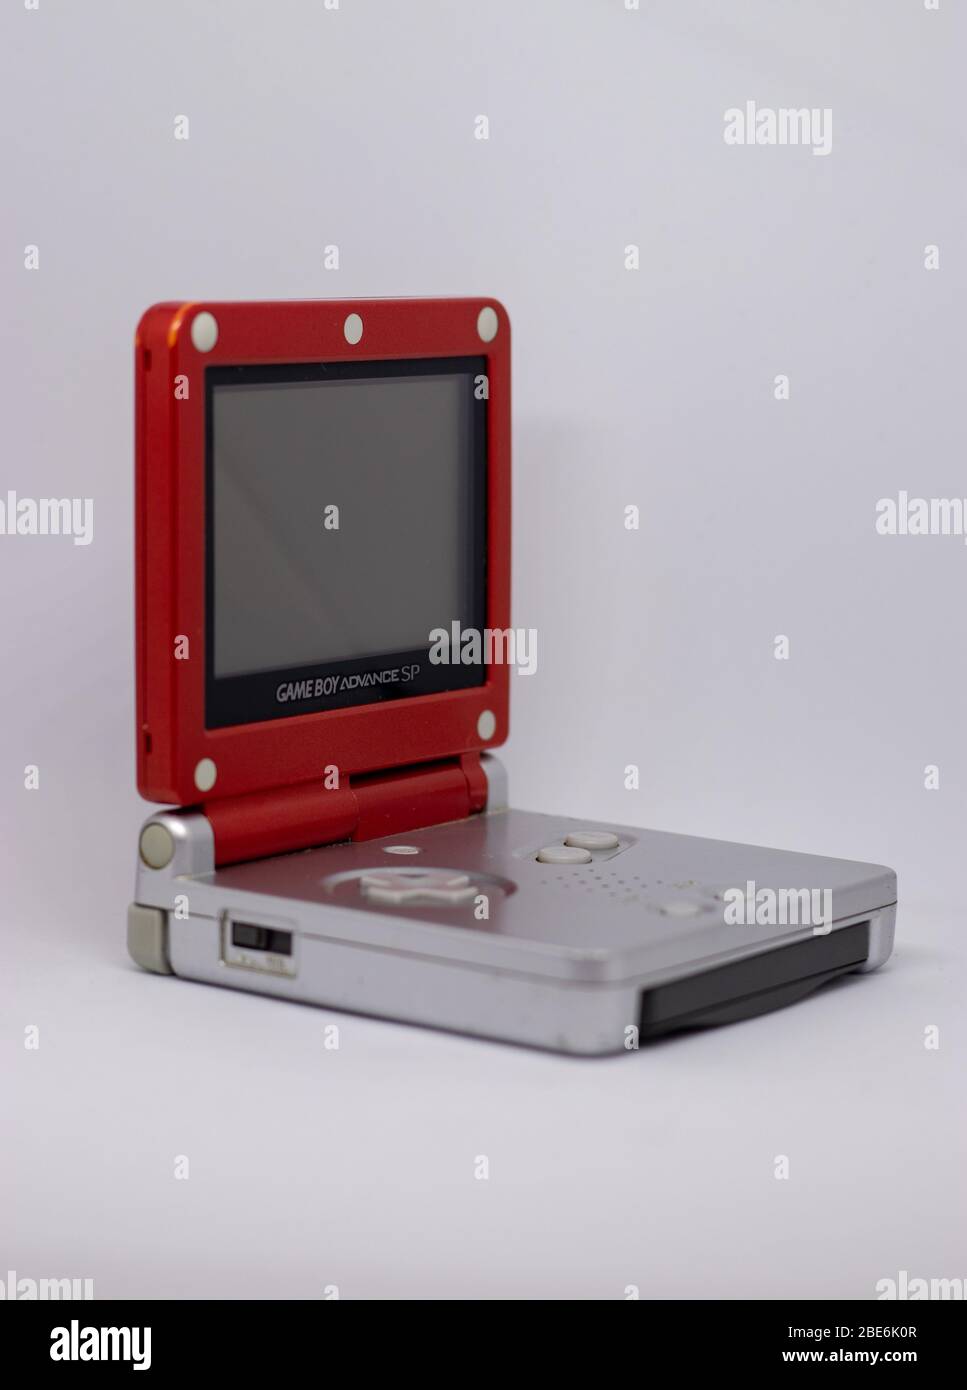 Game boy Advanced SP console portatile da Nintendo da 2003 in rosso argento Super Mario Edition. Aperto, spento con gioco inserito su bianco Foto Stock